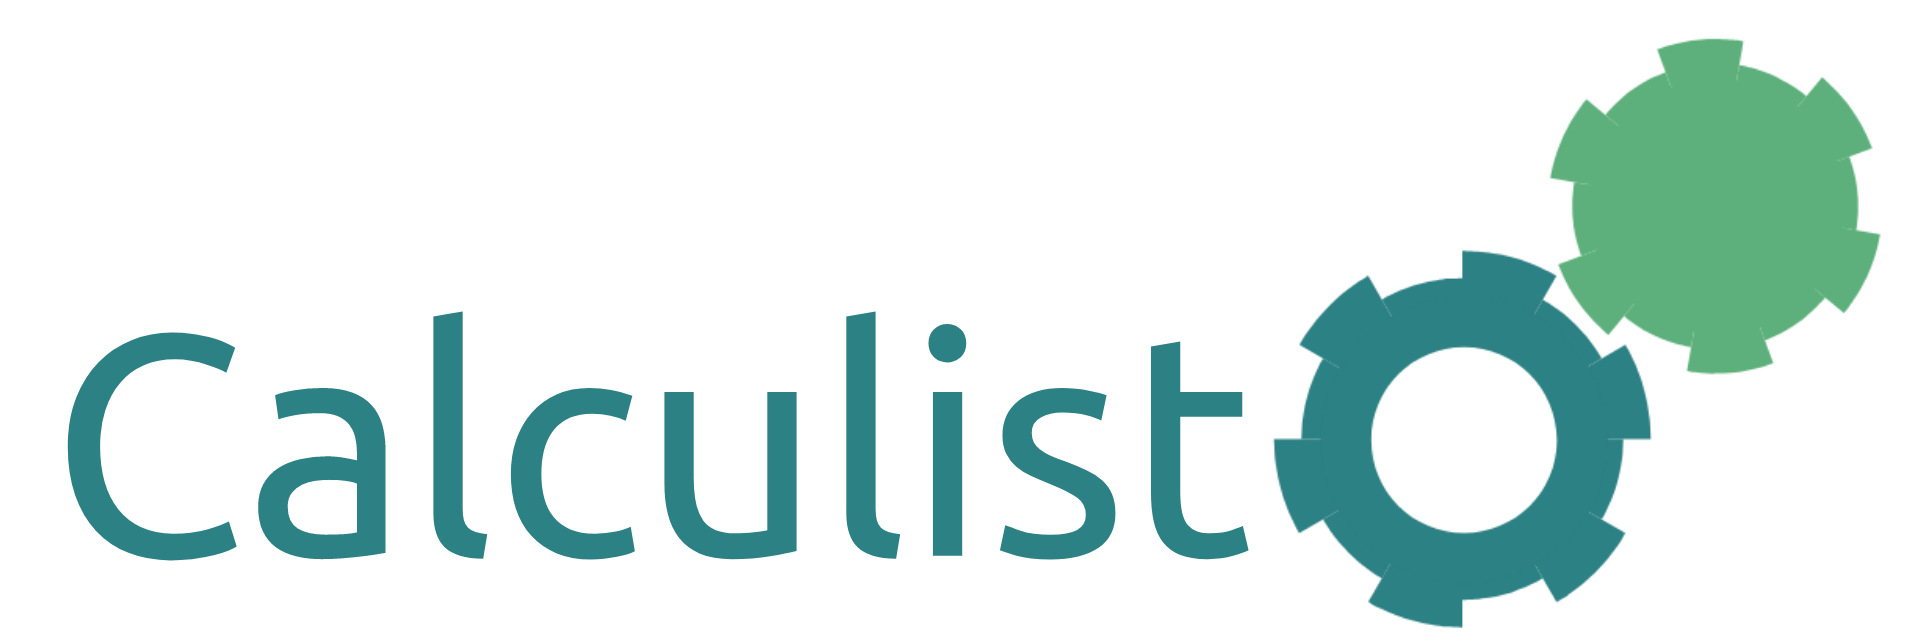 Calculisto Logo